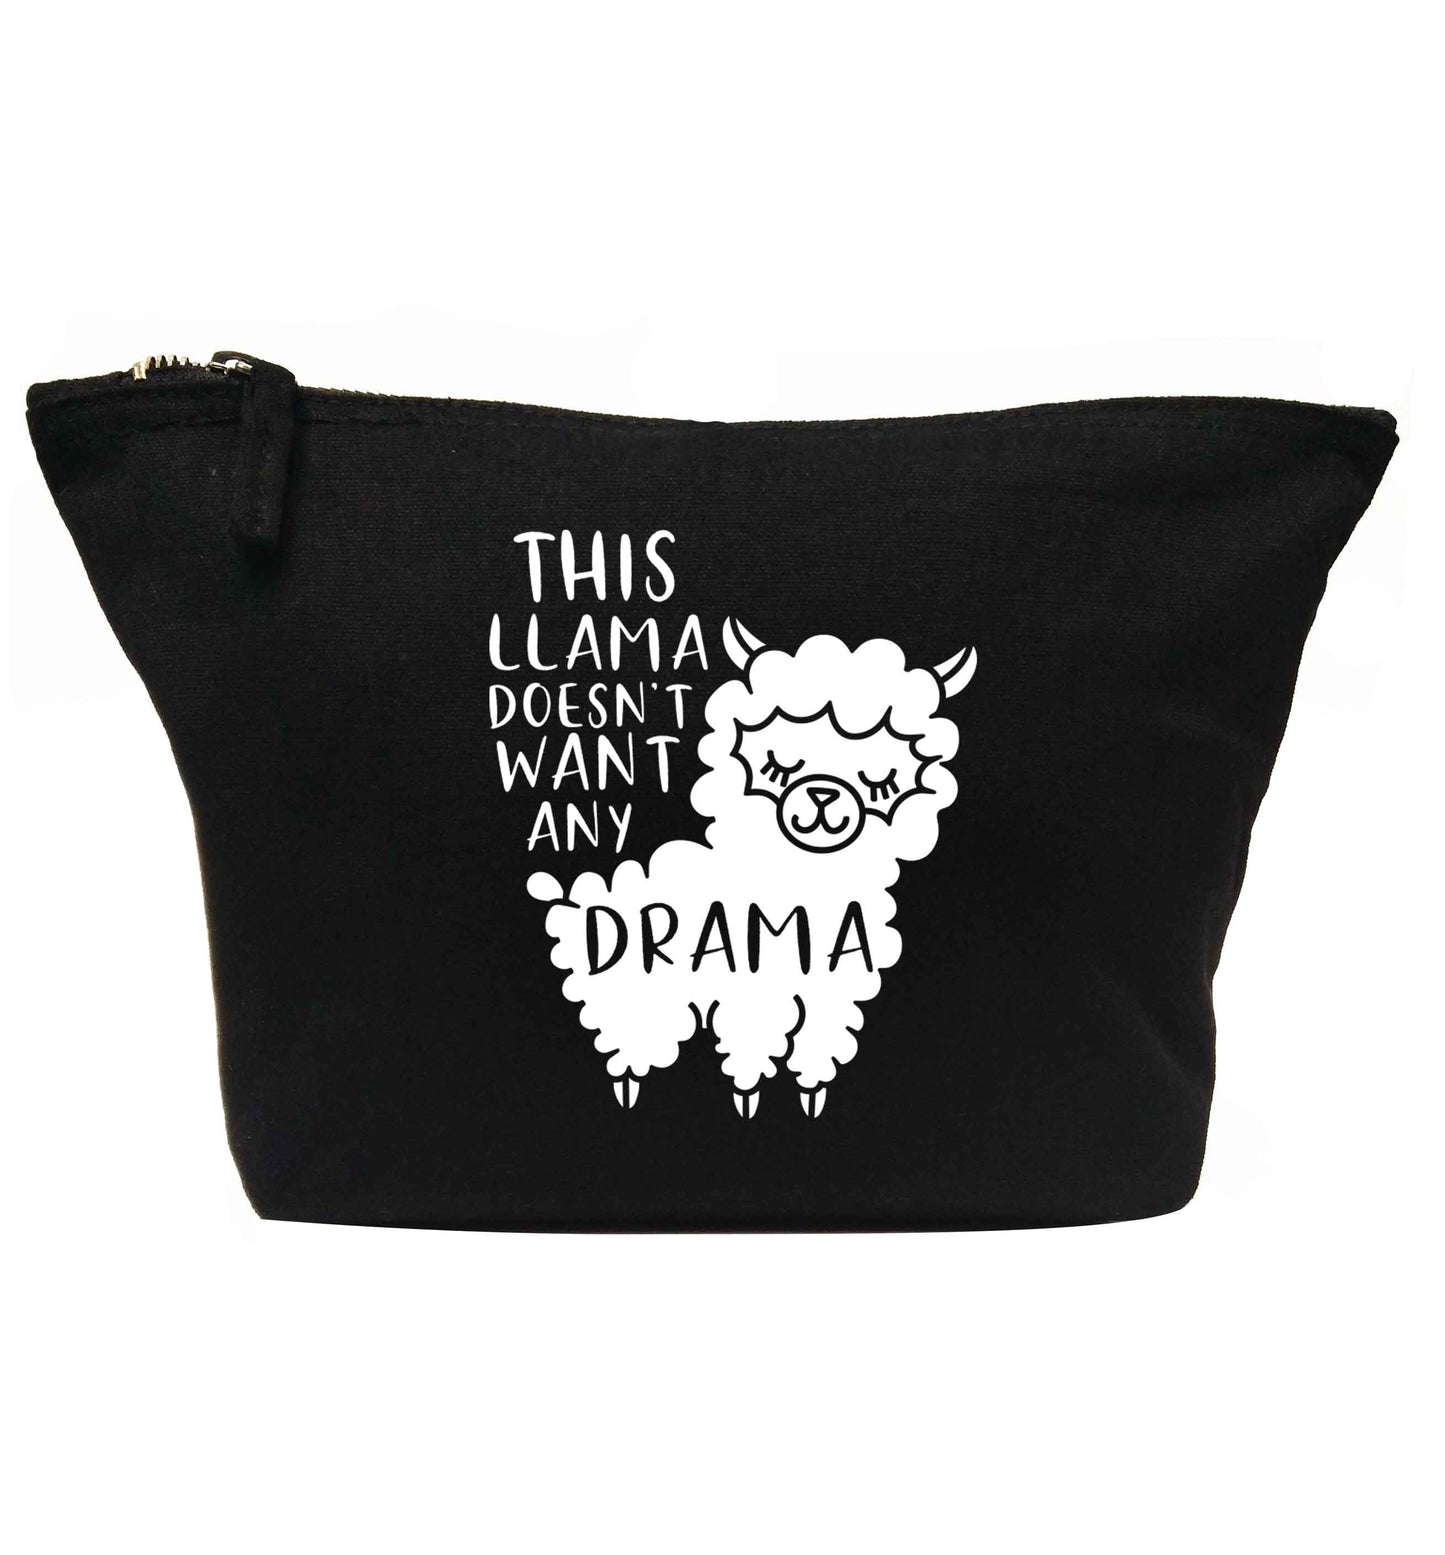 This Llama doesn't want any drama | Makeup / wash bag